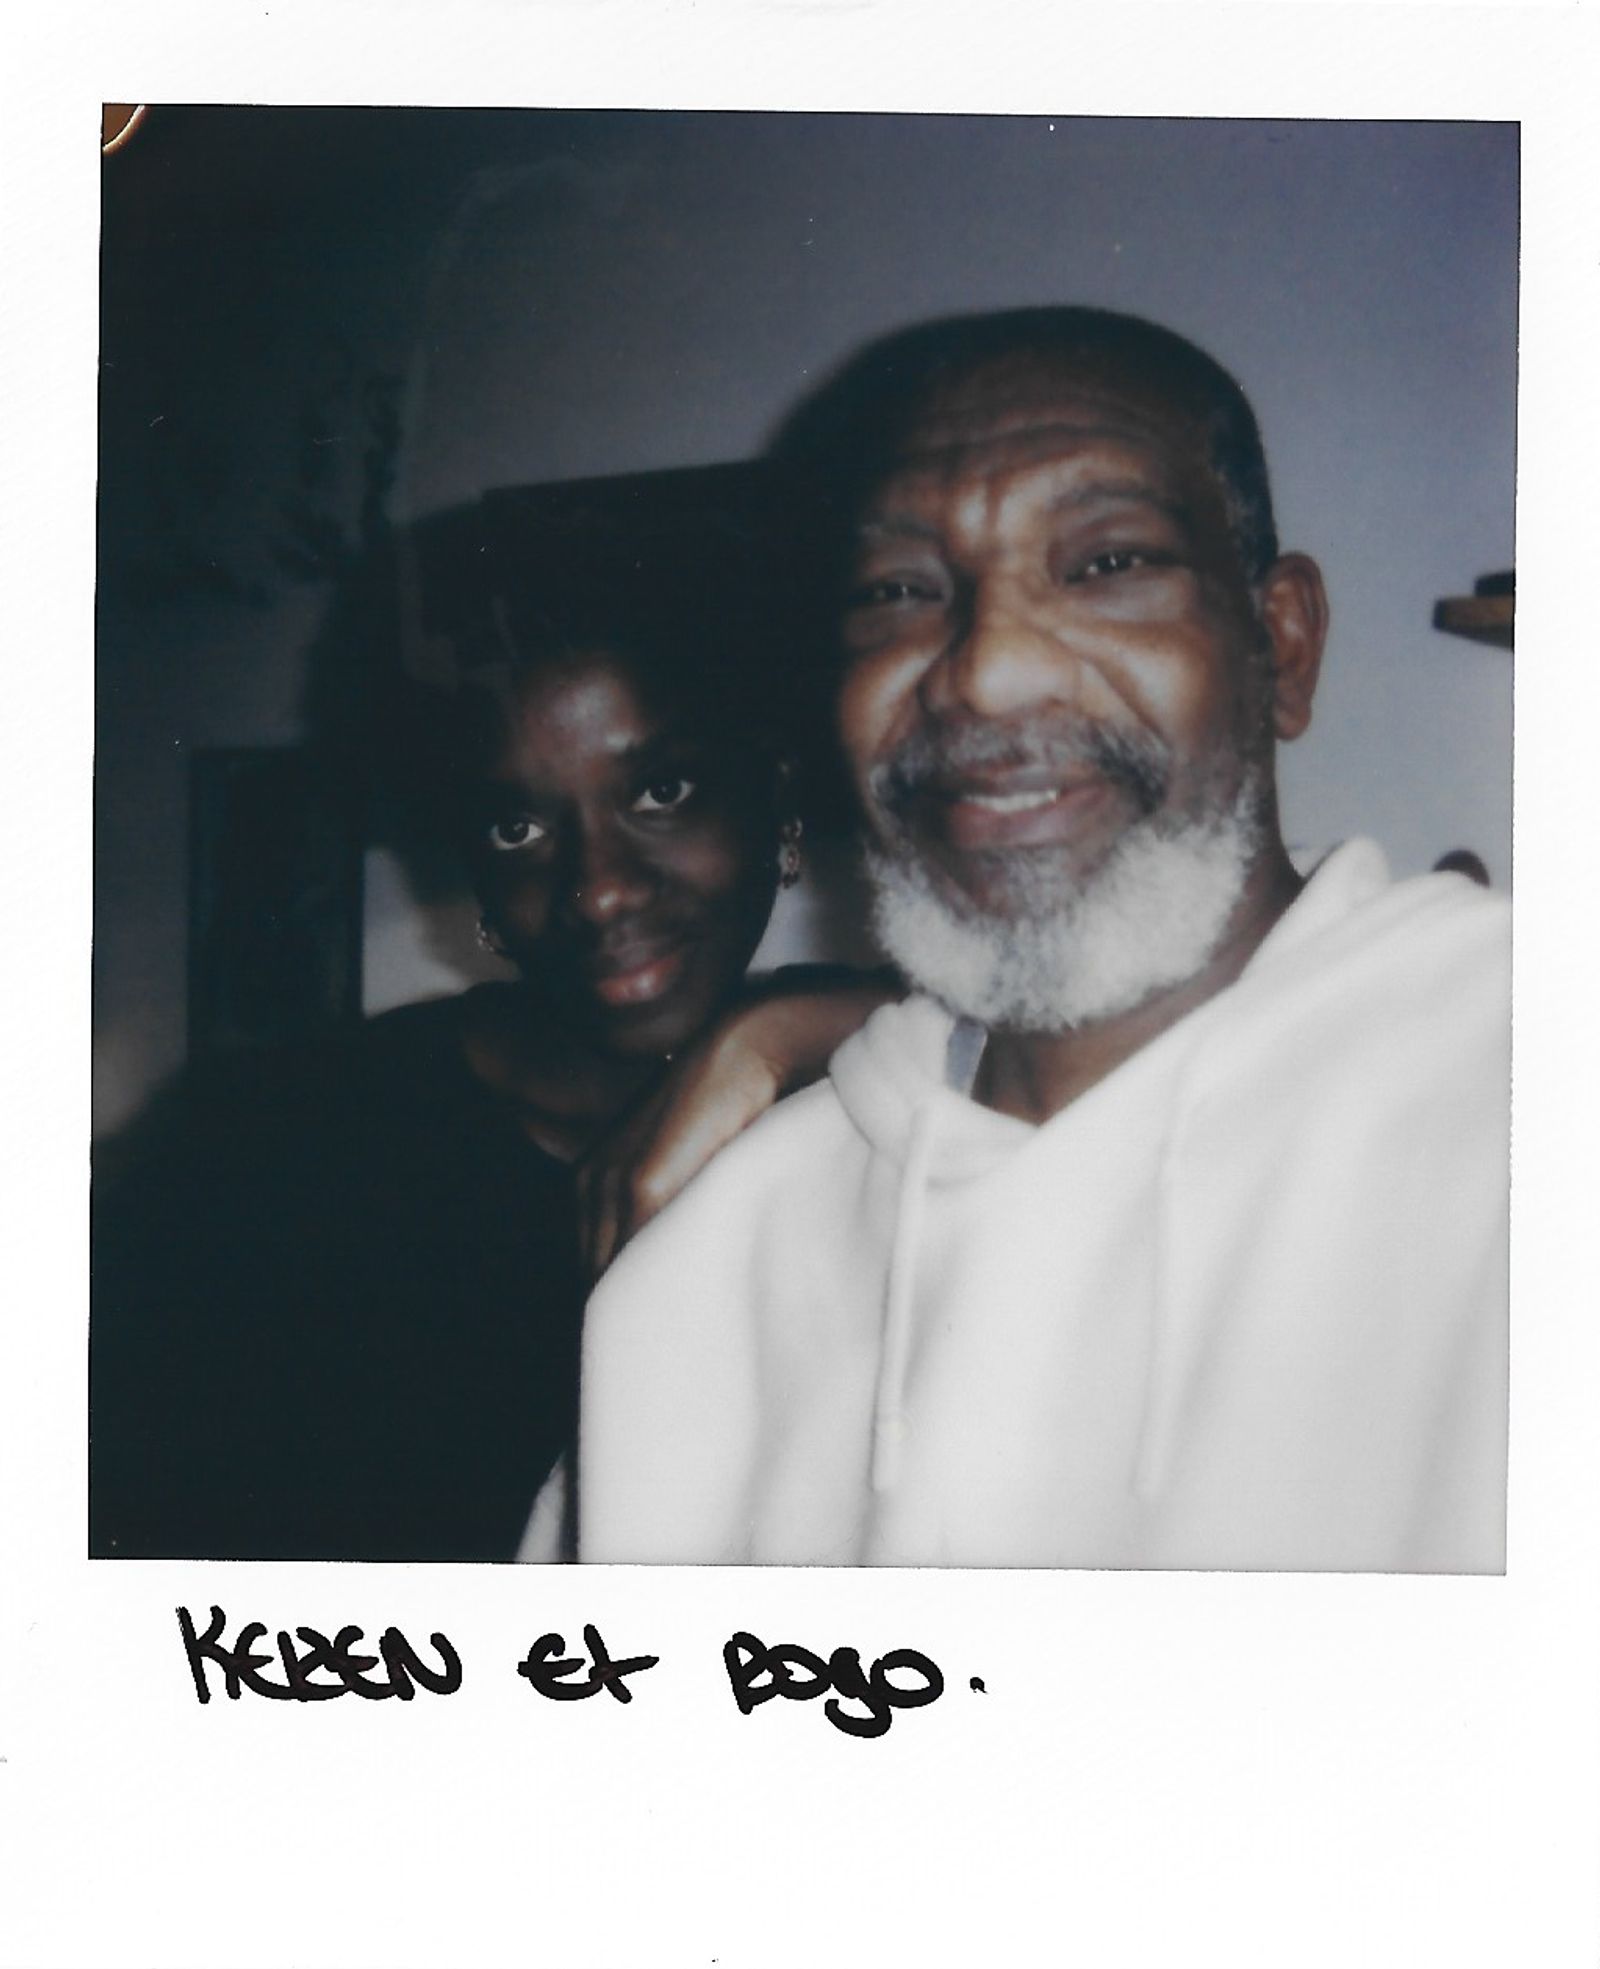 © Keren Lasme - A selfie of me and Rogo. Text: Keren et Rogo. Translation: Keren and Rogo